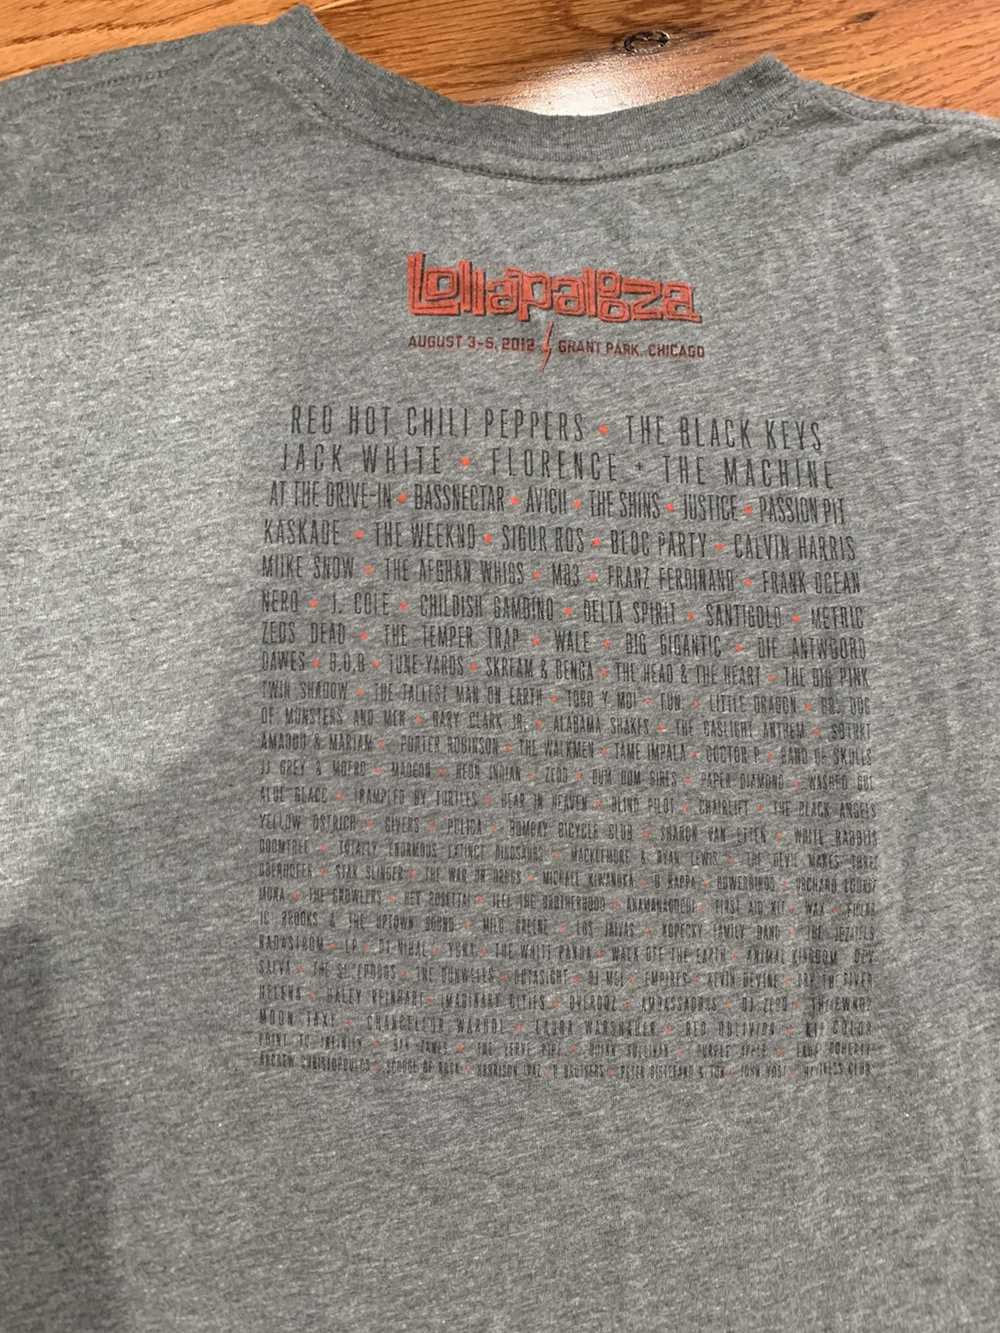 Band Tees × Gap Lollapalooza 2012 Lineup T-shirt - image 4